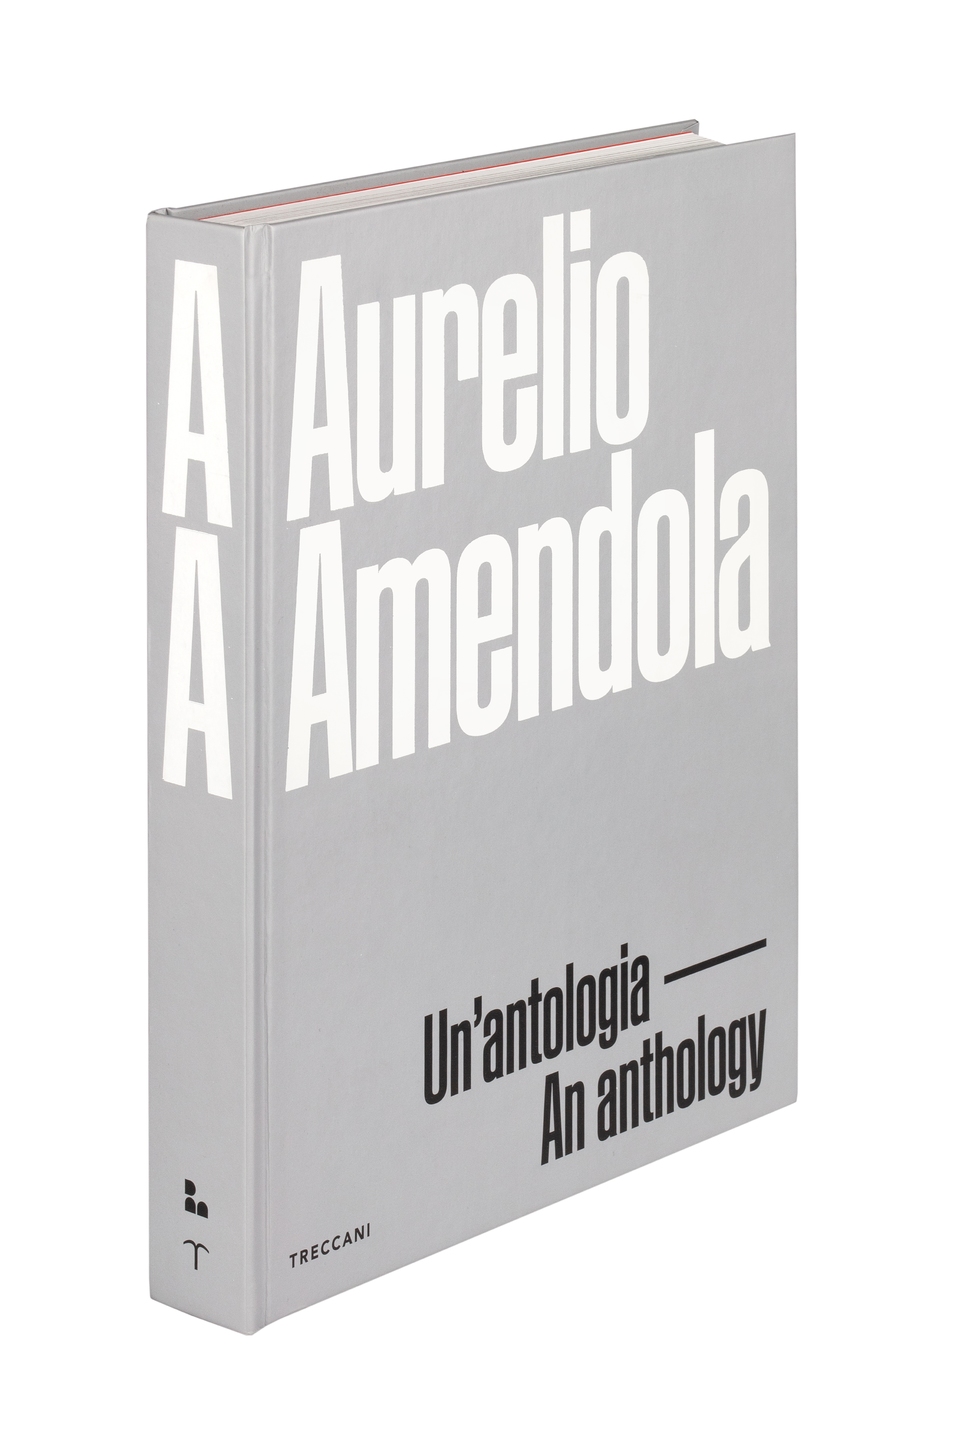 Aurelio Amendola. Un'antologia